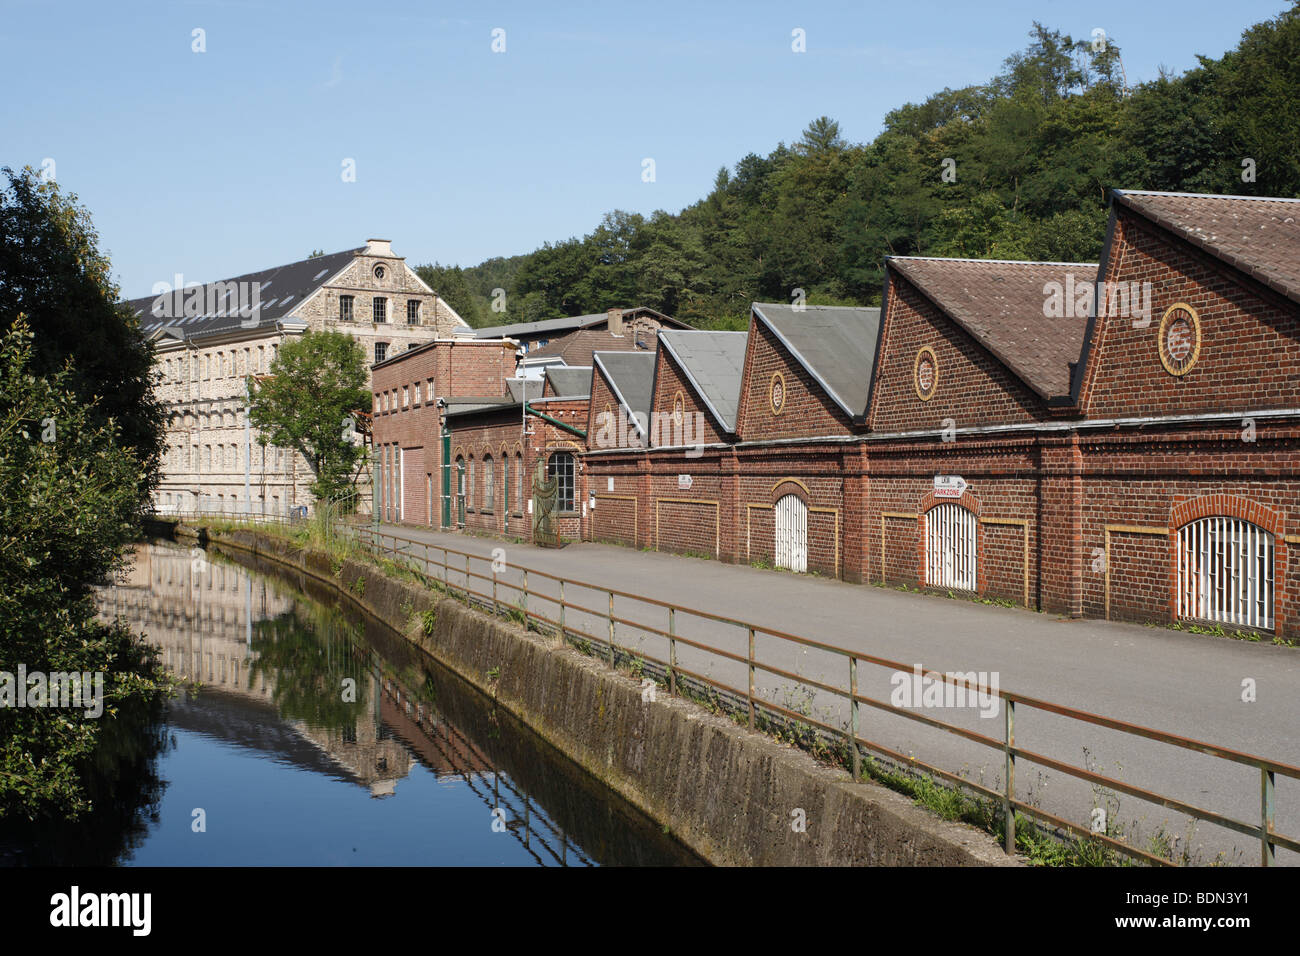 Radevormwald-Dahlerau, 'Textilstadt' Tuchfabrik Wülfing, Hauptgebäude mit Shedhallen an der Wupper Foto Stock